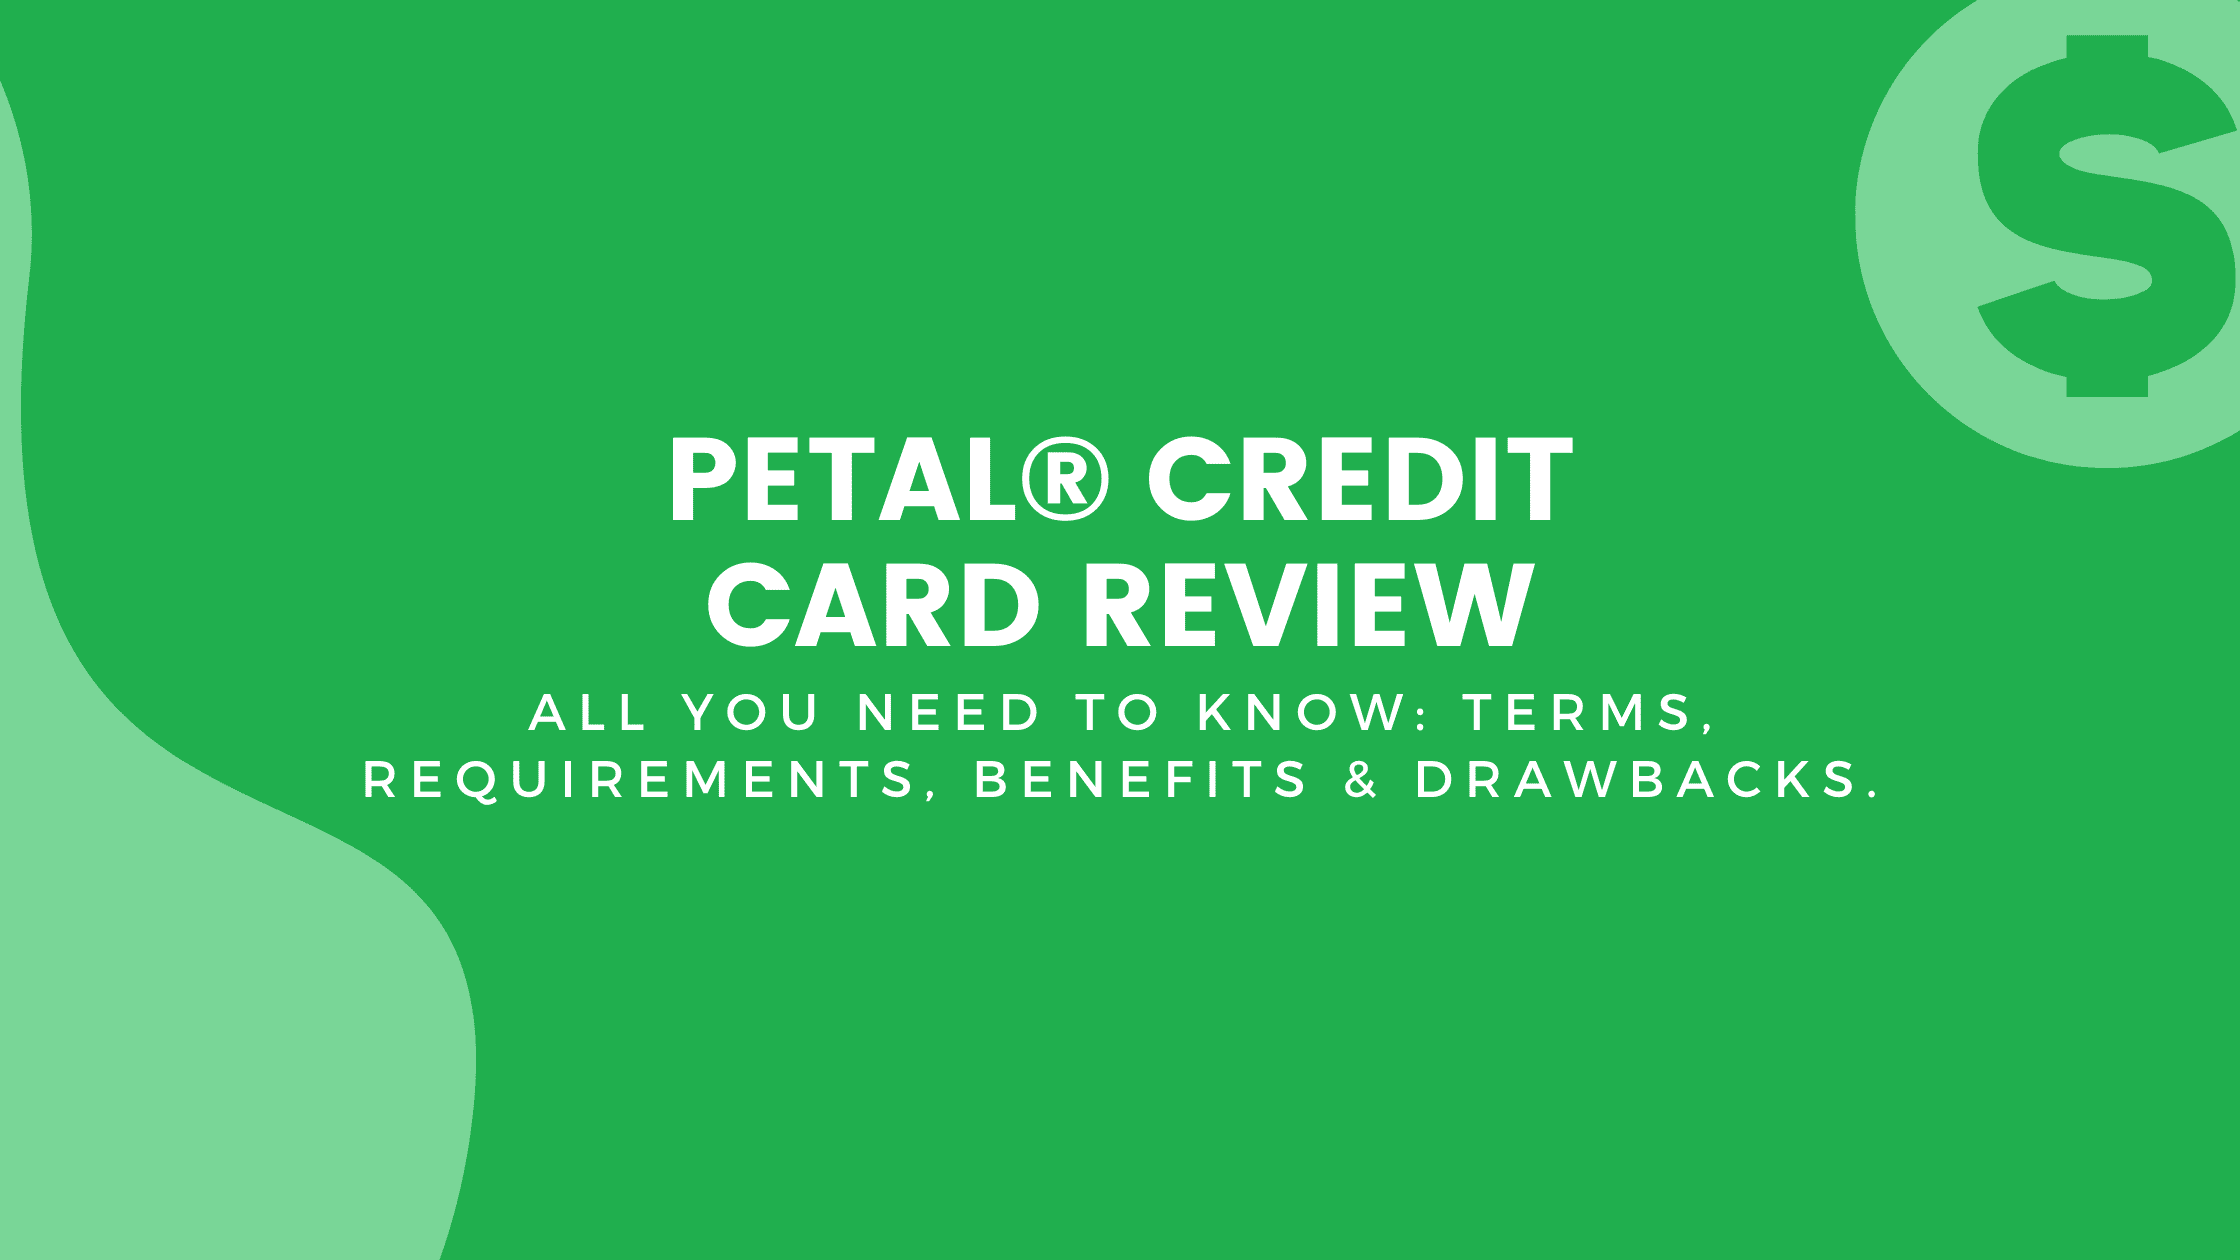 Petal® Credit Card Review